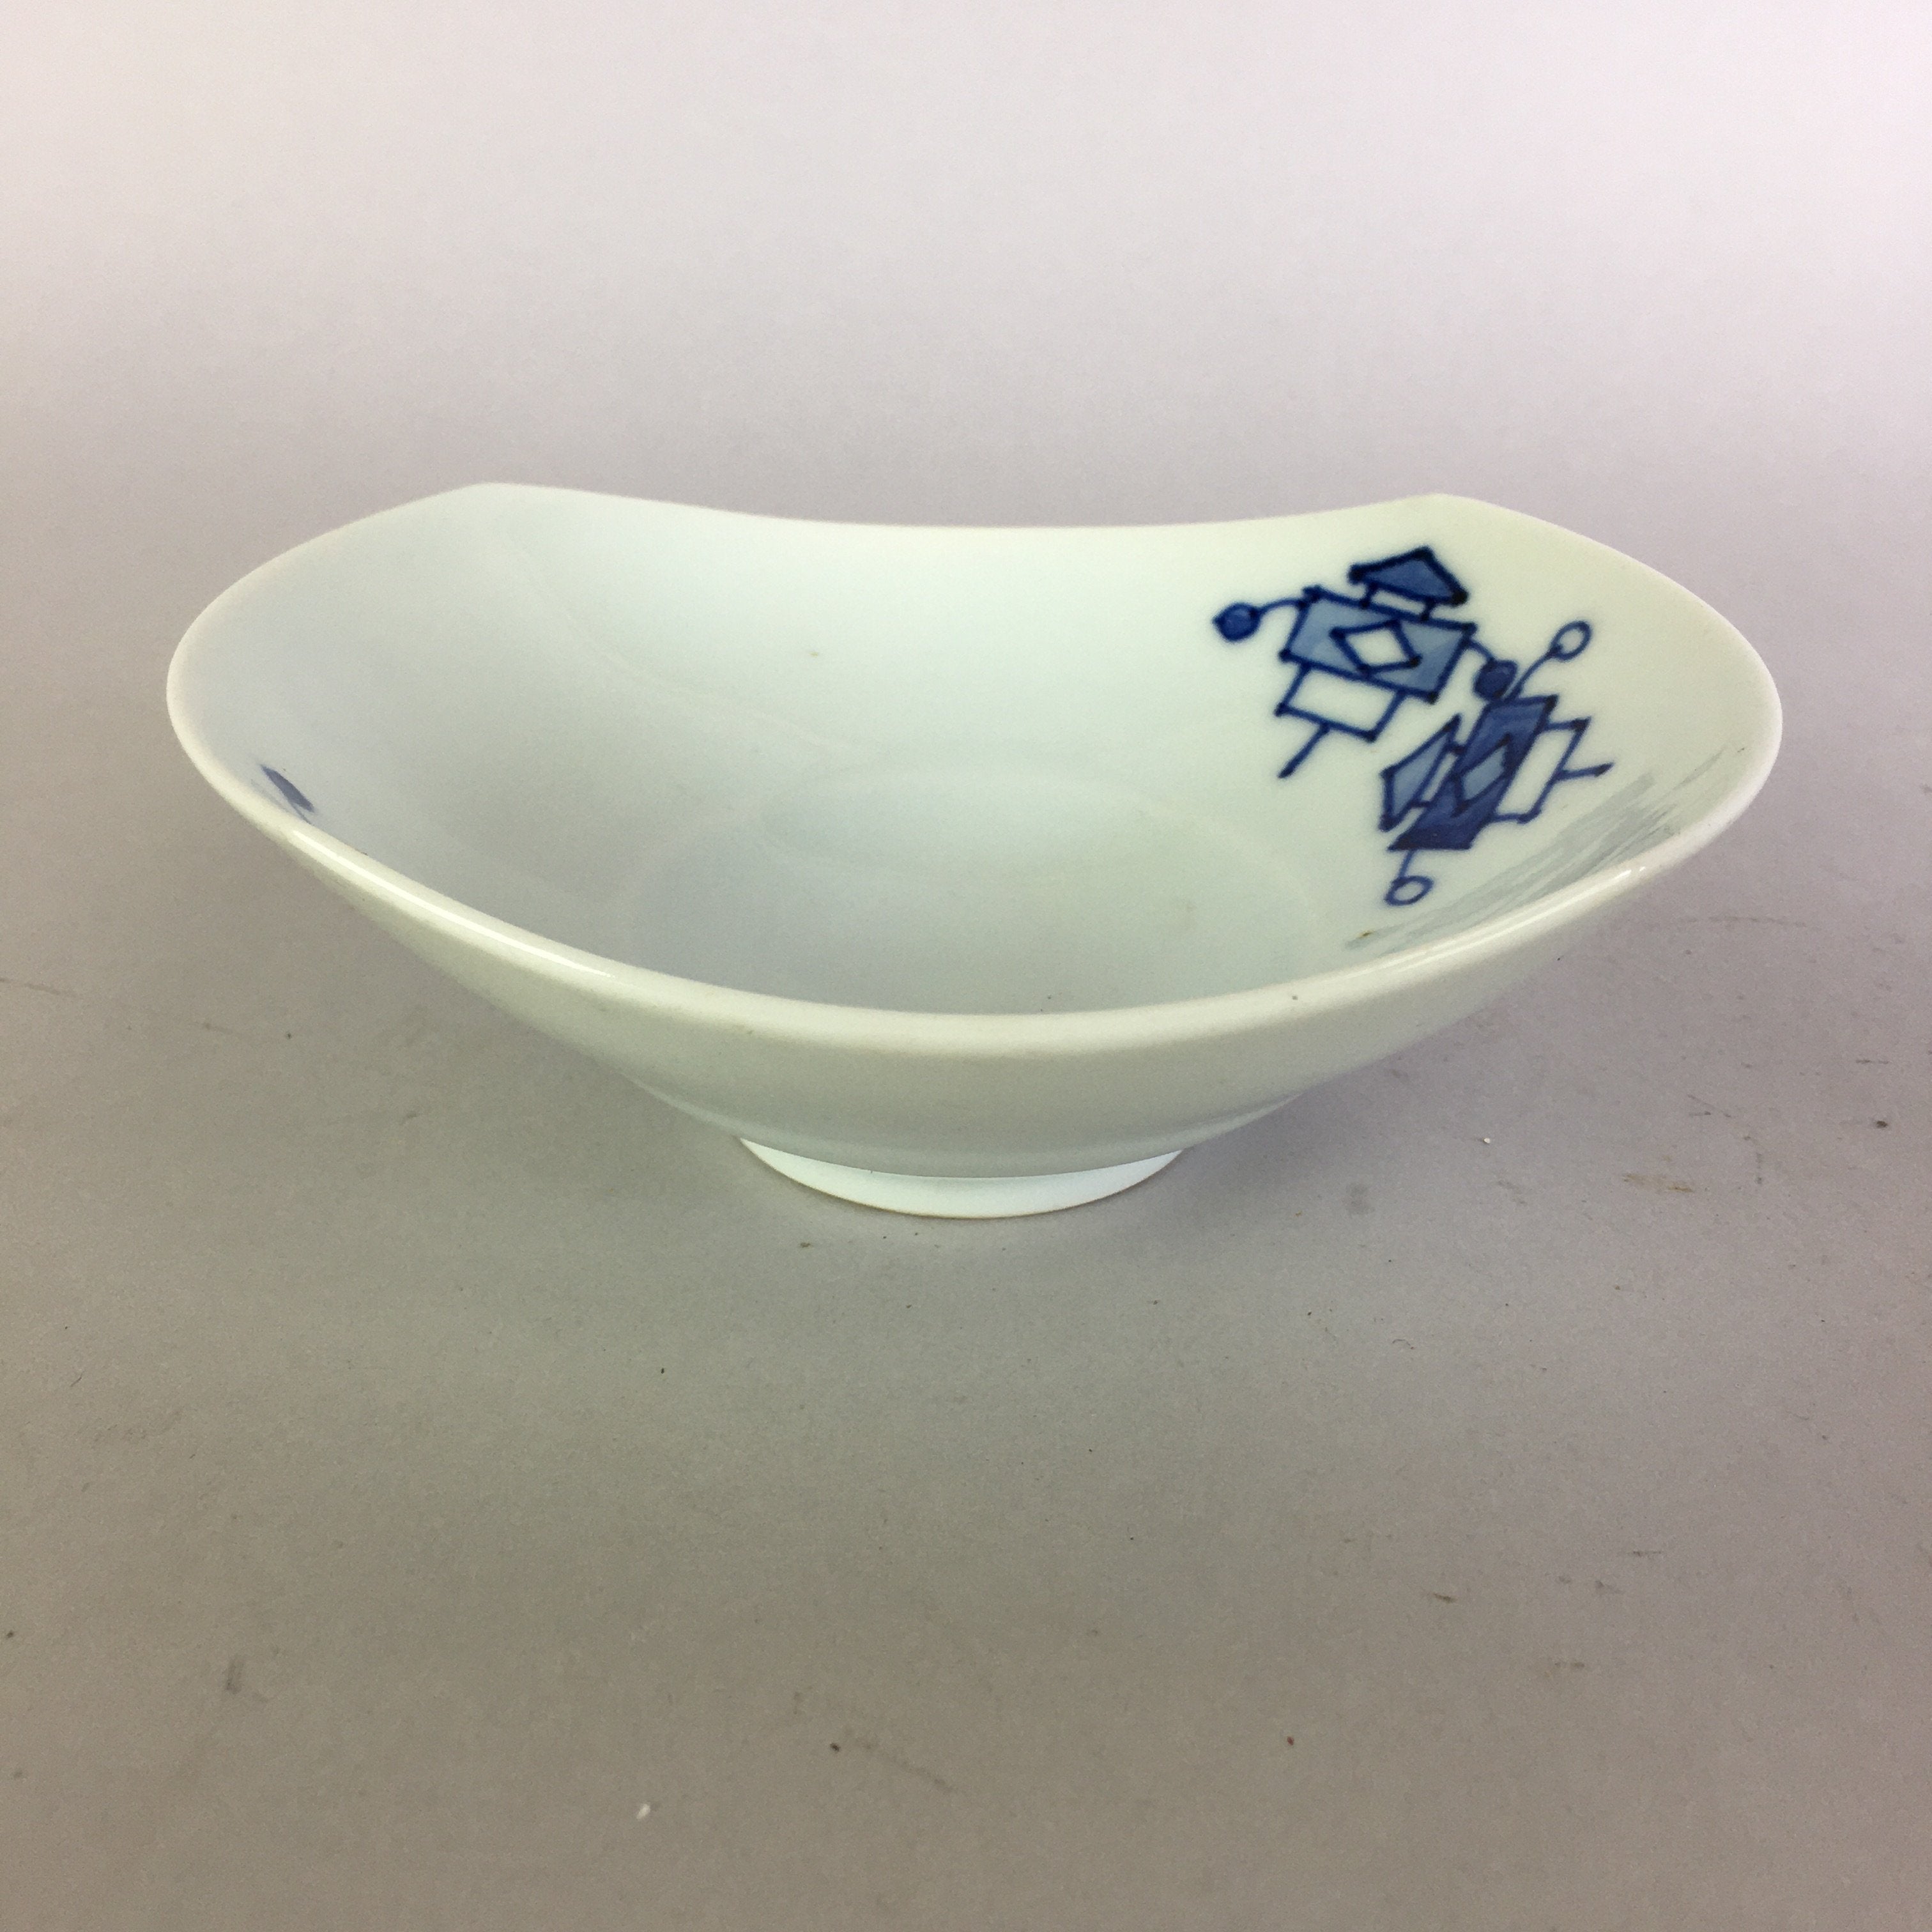 Japanese Porcelain Small Bowl Vtg Kozara White Blue Yajirobei PP466